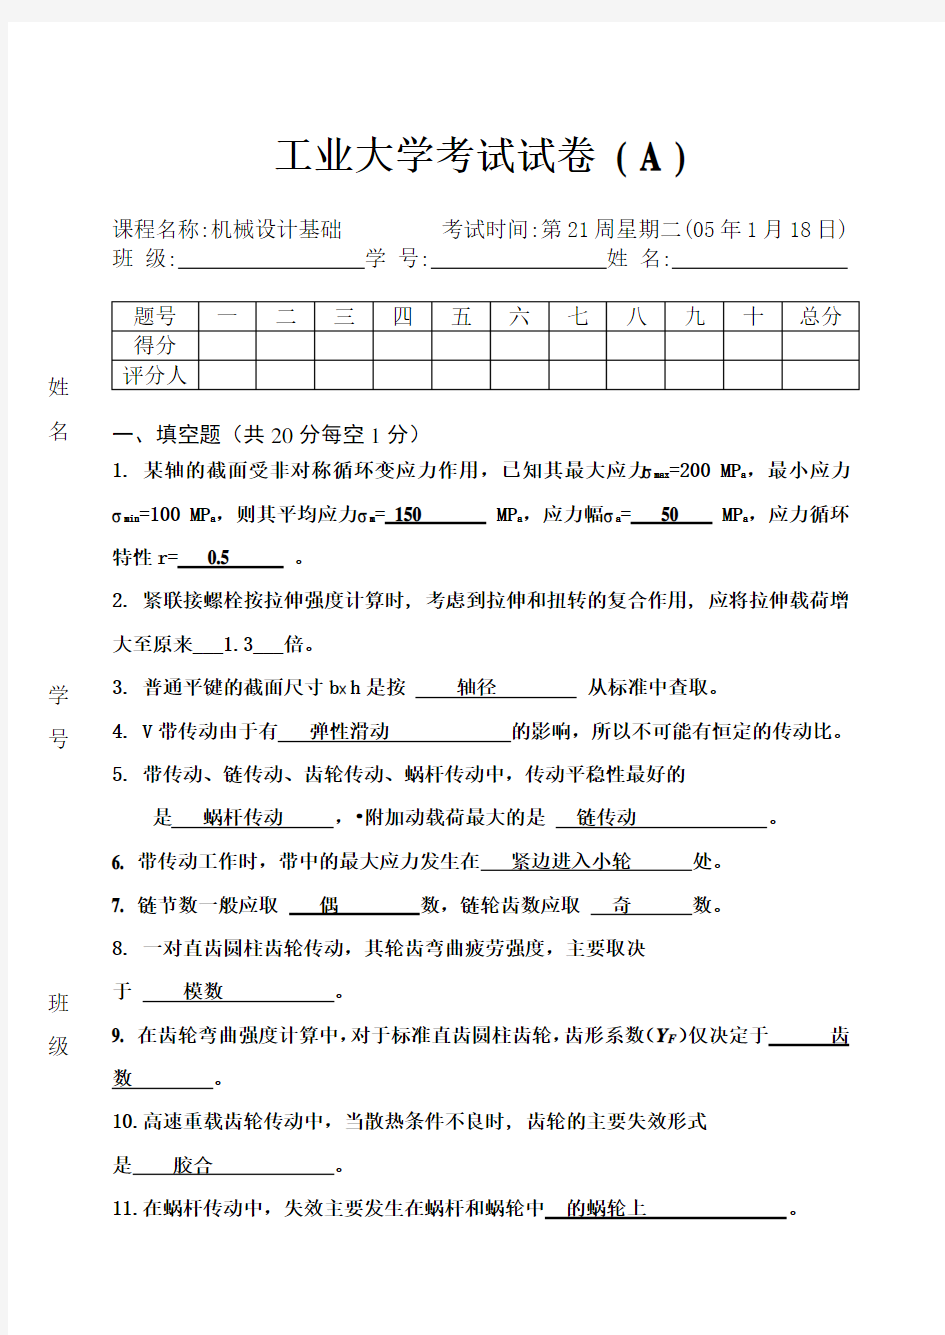 广东工业大学机械设计期末考试试题(卷)与答案解析